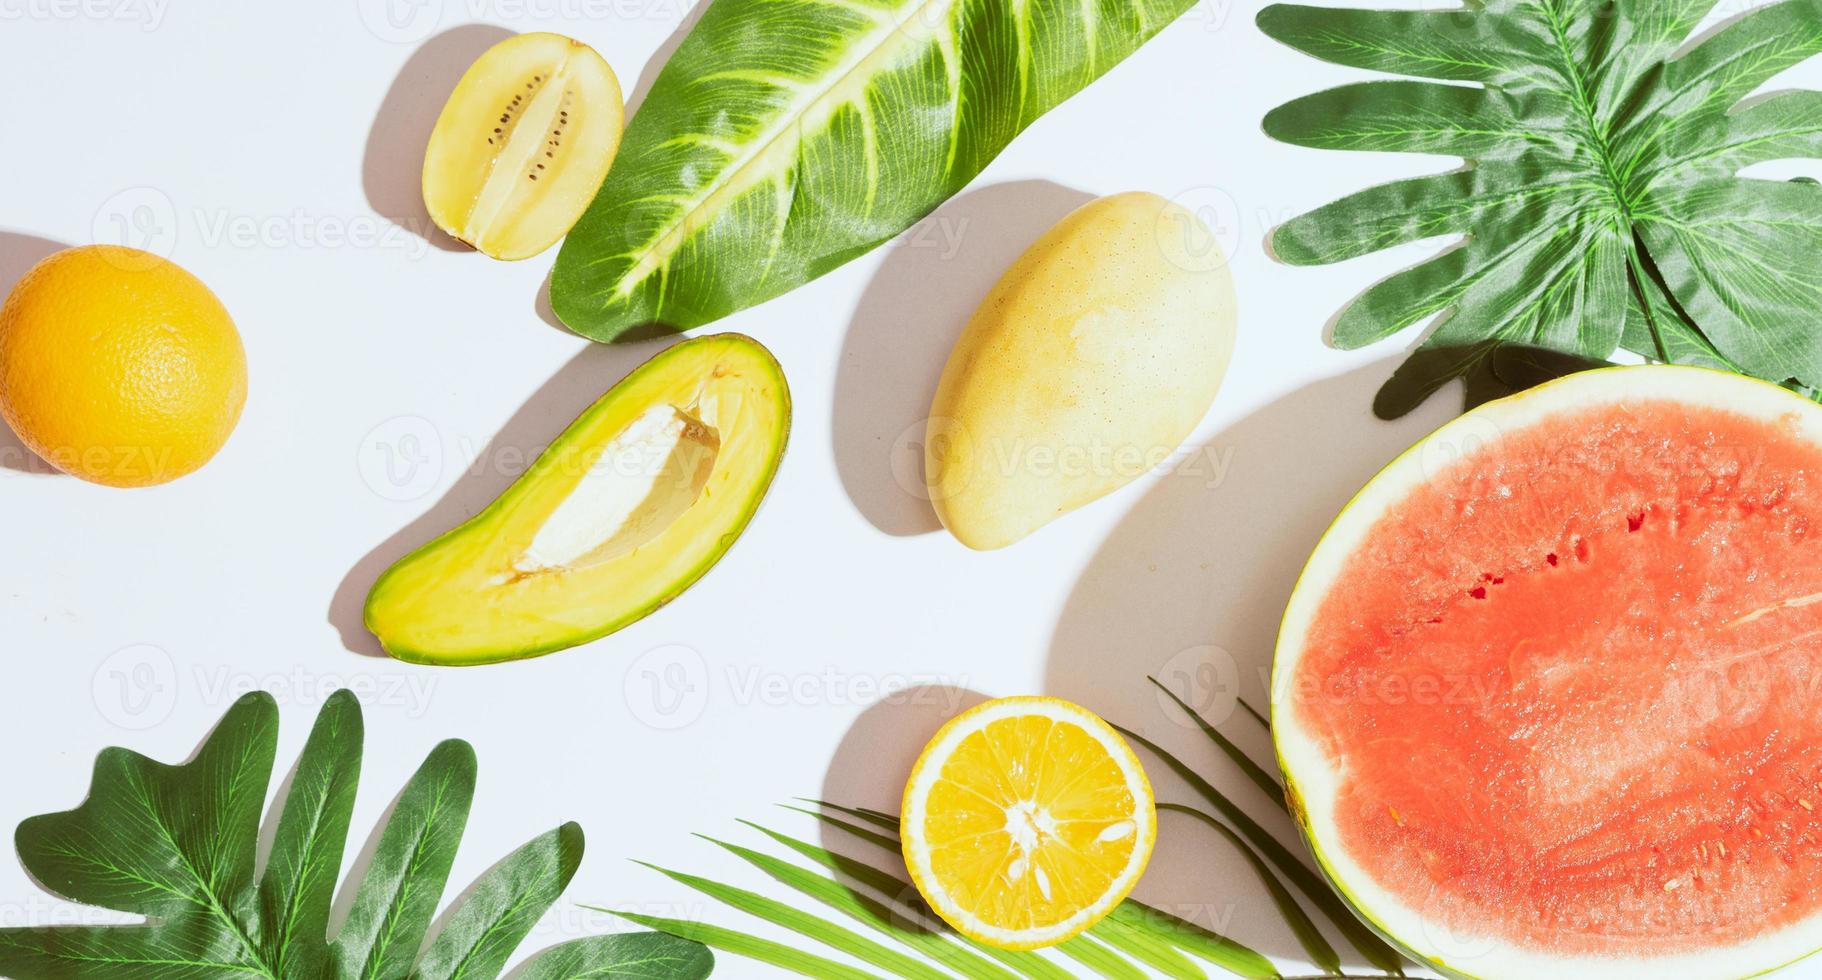 tropiska frukter som mango, apelsin, vattenmelon, avokado är ordnade på en vit bakgrund foto